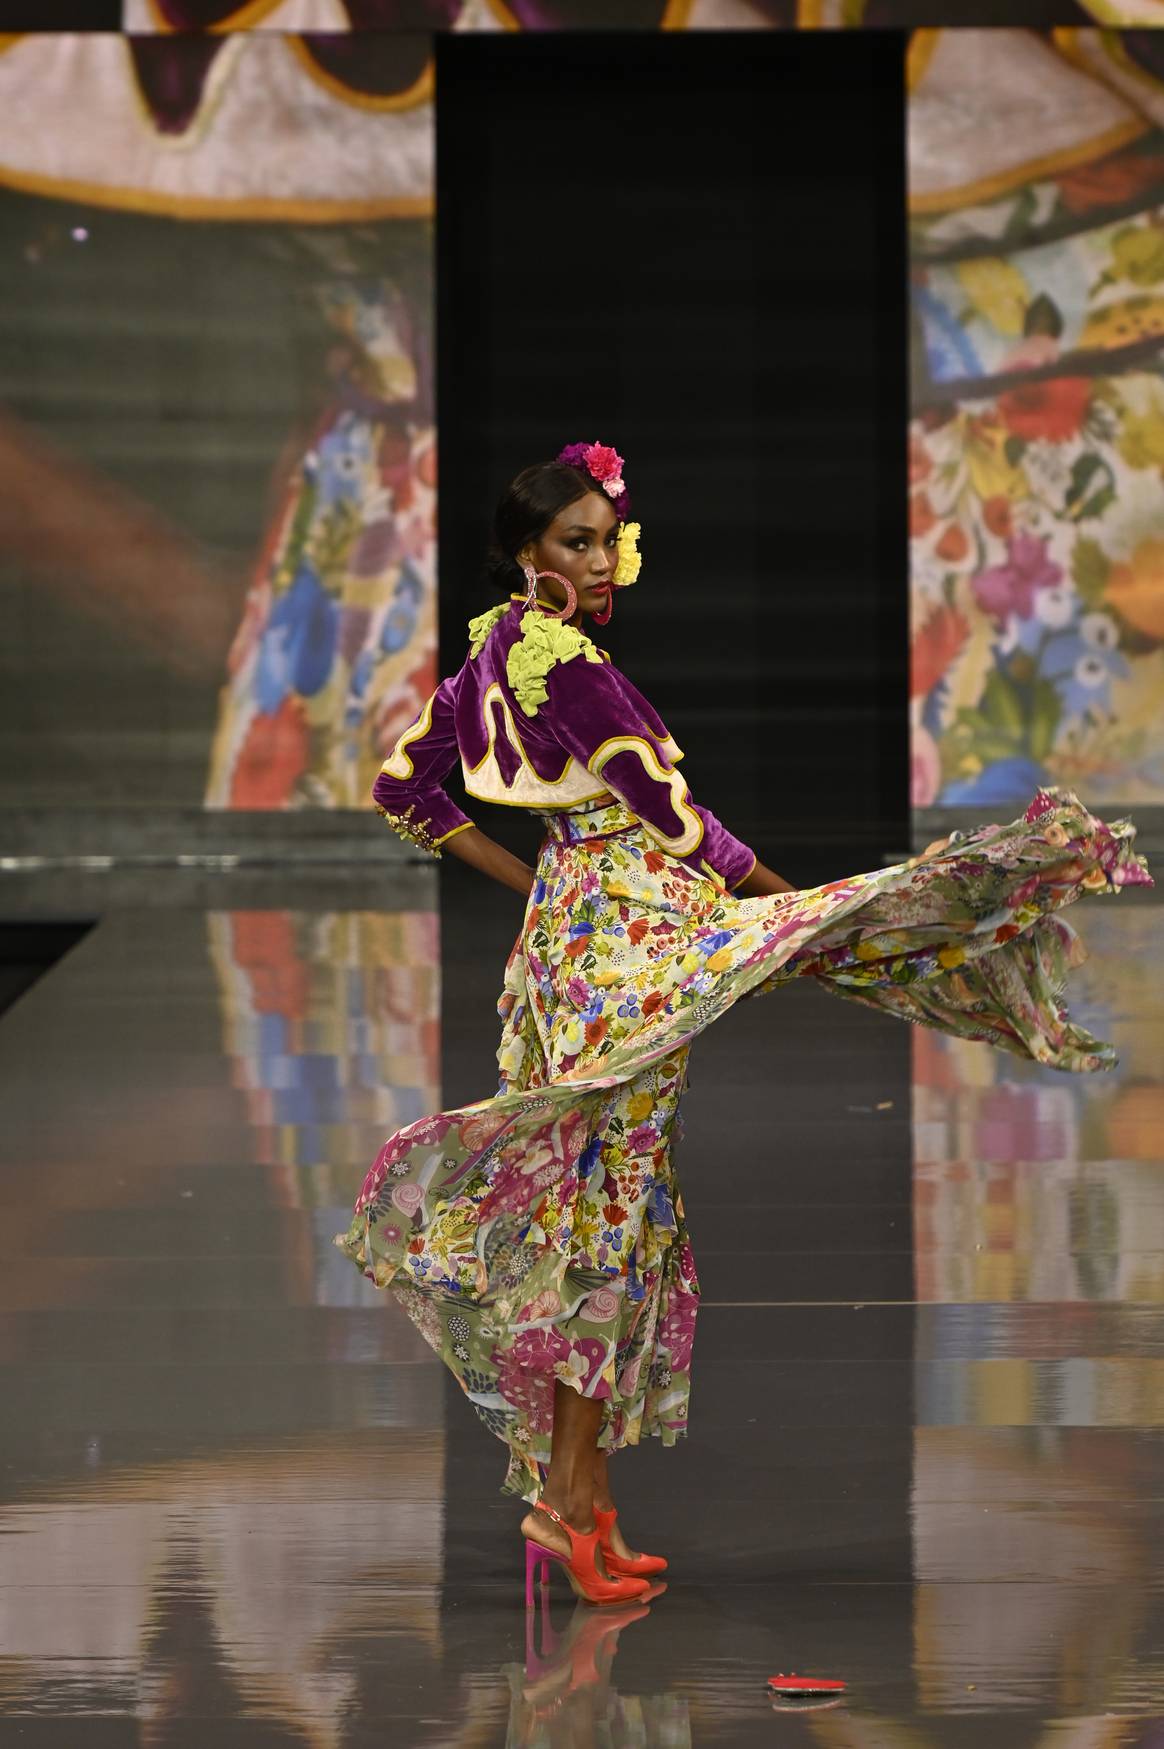 Imagen de Evento inaugural "Looking for Carmen" de Flamenco en SIMOF 2023, por Chema Soler, cortesía de la organización